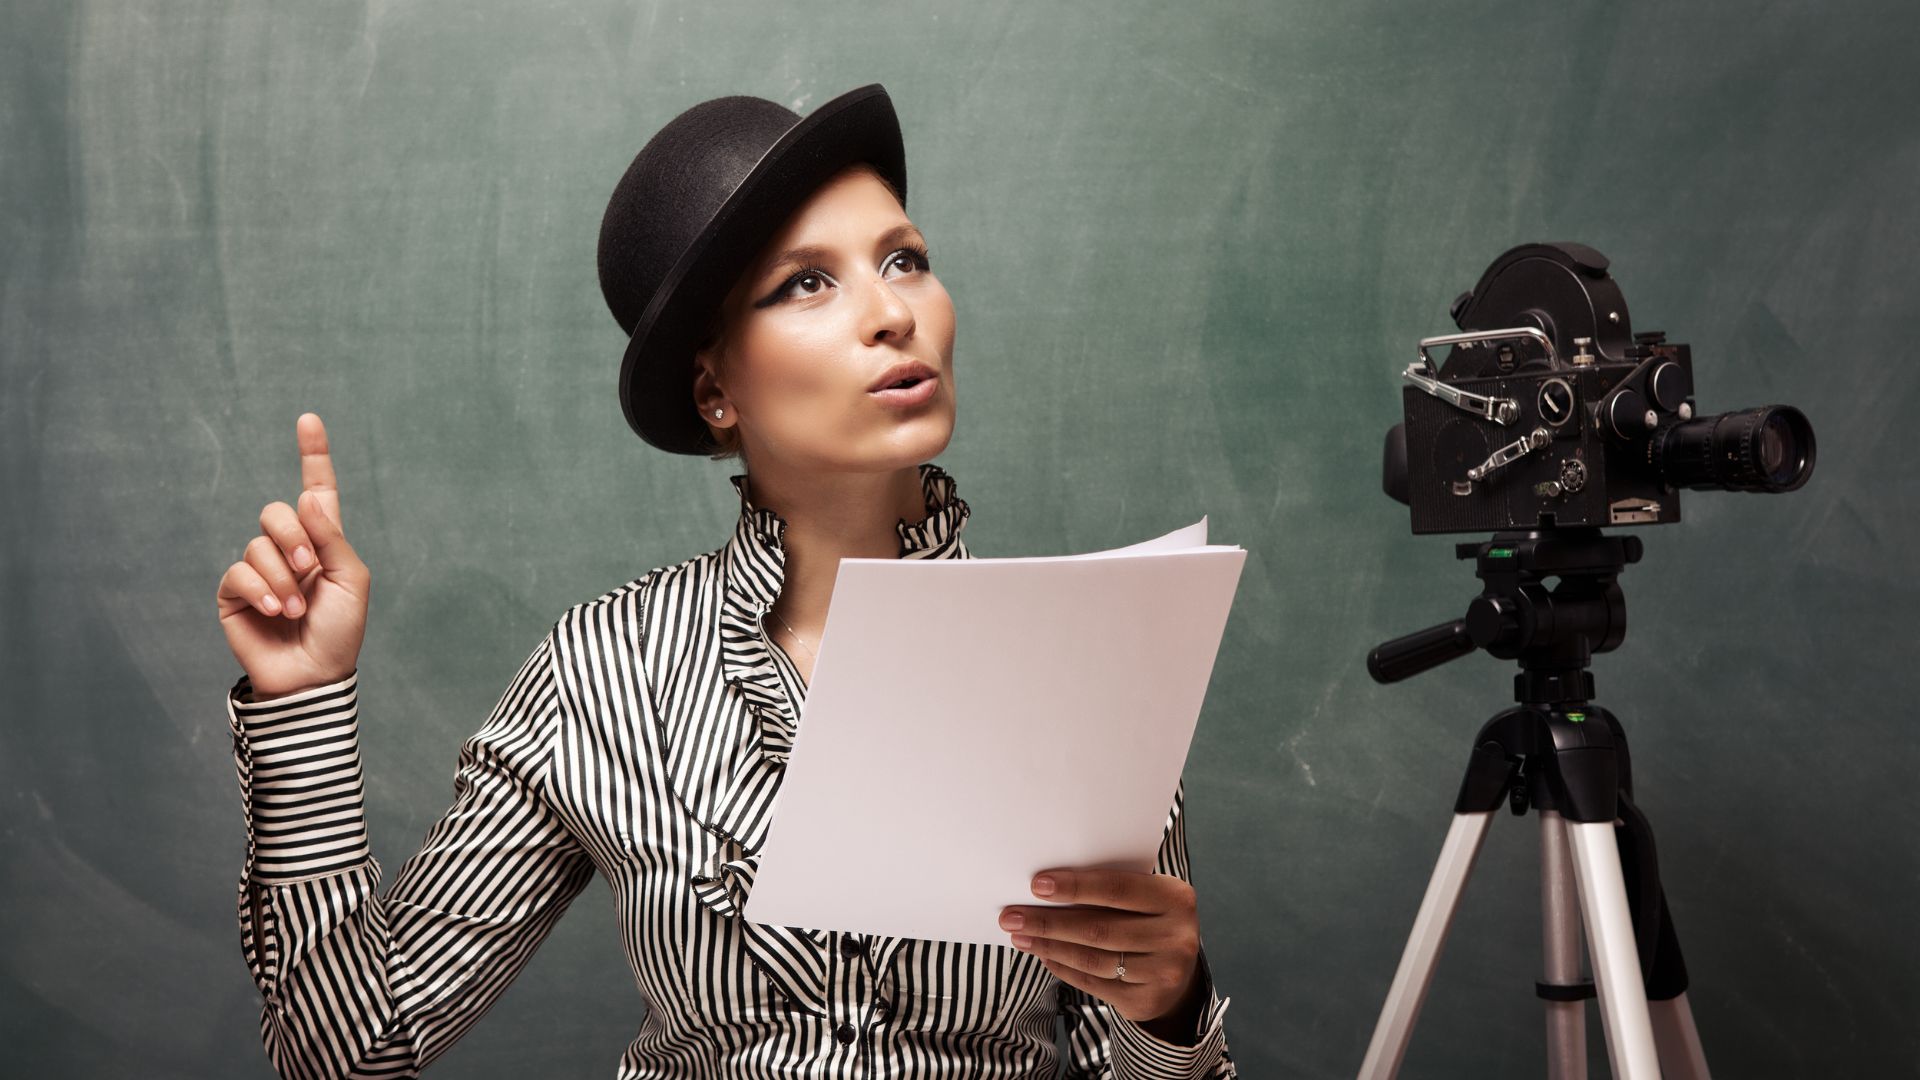 Imagem de uma atriz usando uma camisa listrada nas cores branco e preto e um chapéu preto, ensaiando o seu roteiro. Ao lado, uma câmera de TV.